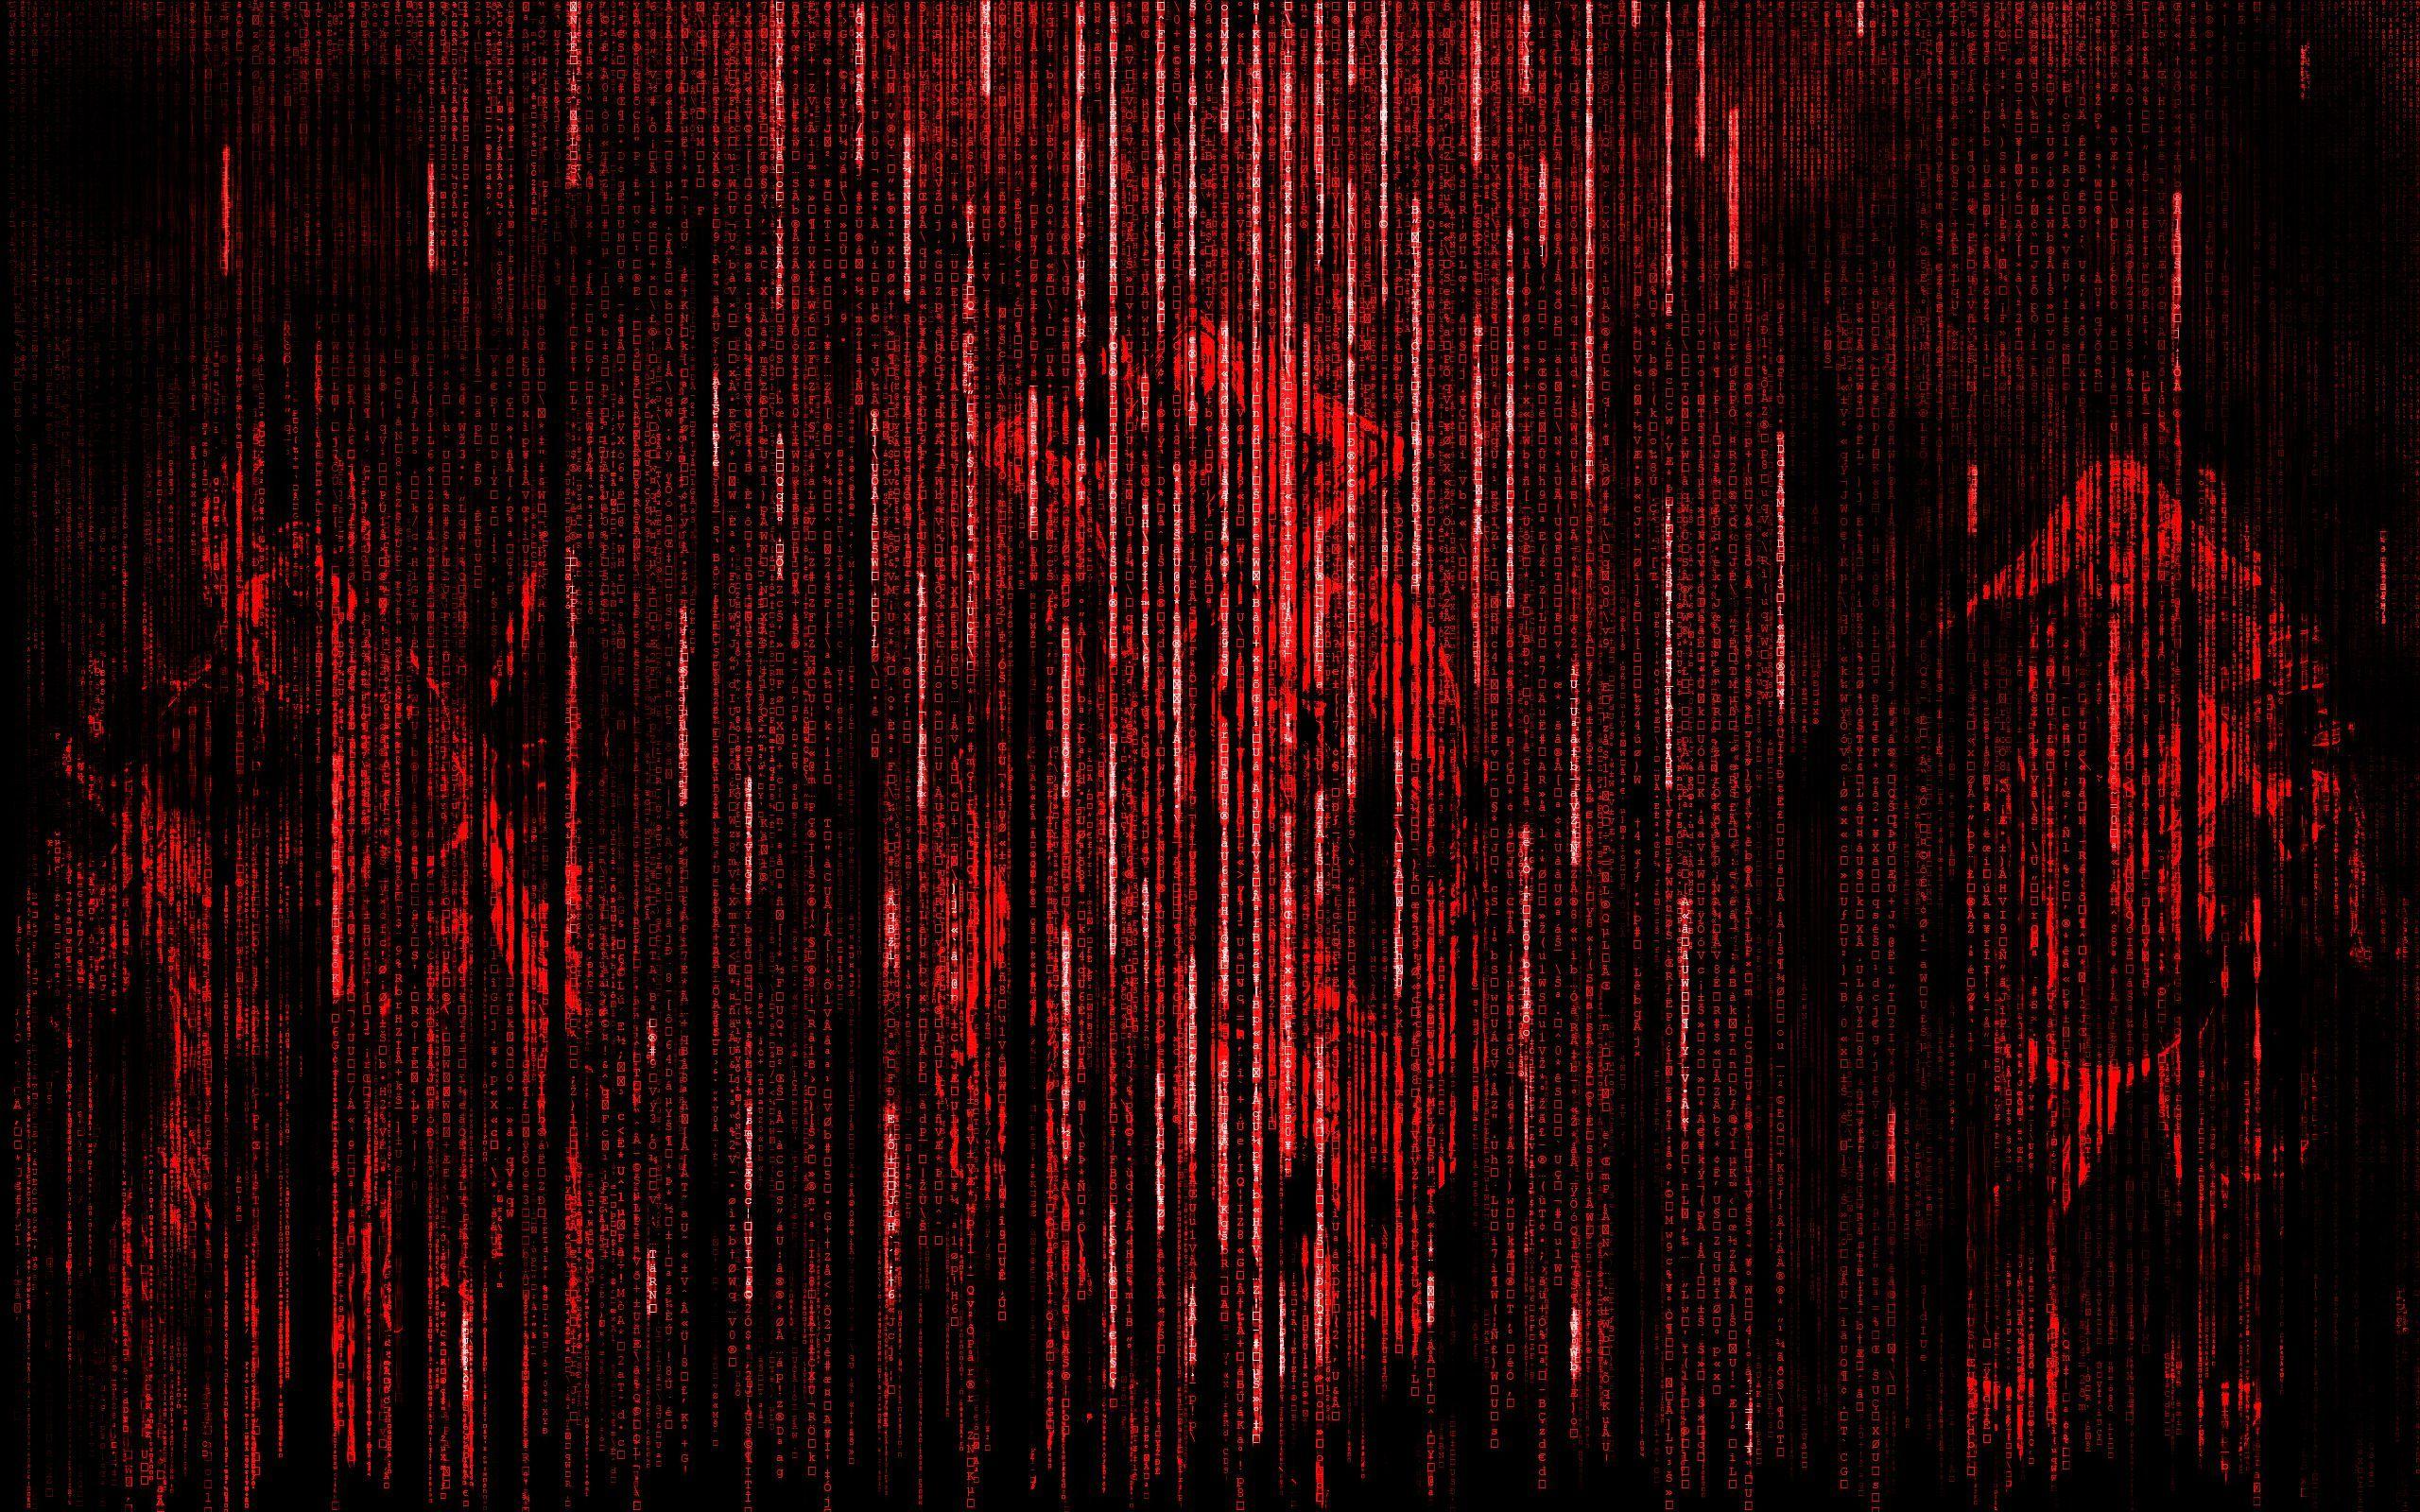 Red Matrix Backgrounds: Bạn muốn tìm kiếm một bộ hình nền độc đáo và đẹp mắt? Hãy xem những hình nền ma trận màu đỏ để khám phá thế giới kỳ ảo và mạnh mẽ. Màu đỏ tươi sáng cùng với những đường viền vuông vắn tạo nên một hình ảnh đầy sức hút và cá tính.